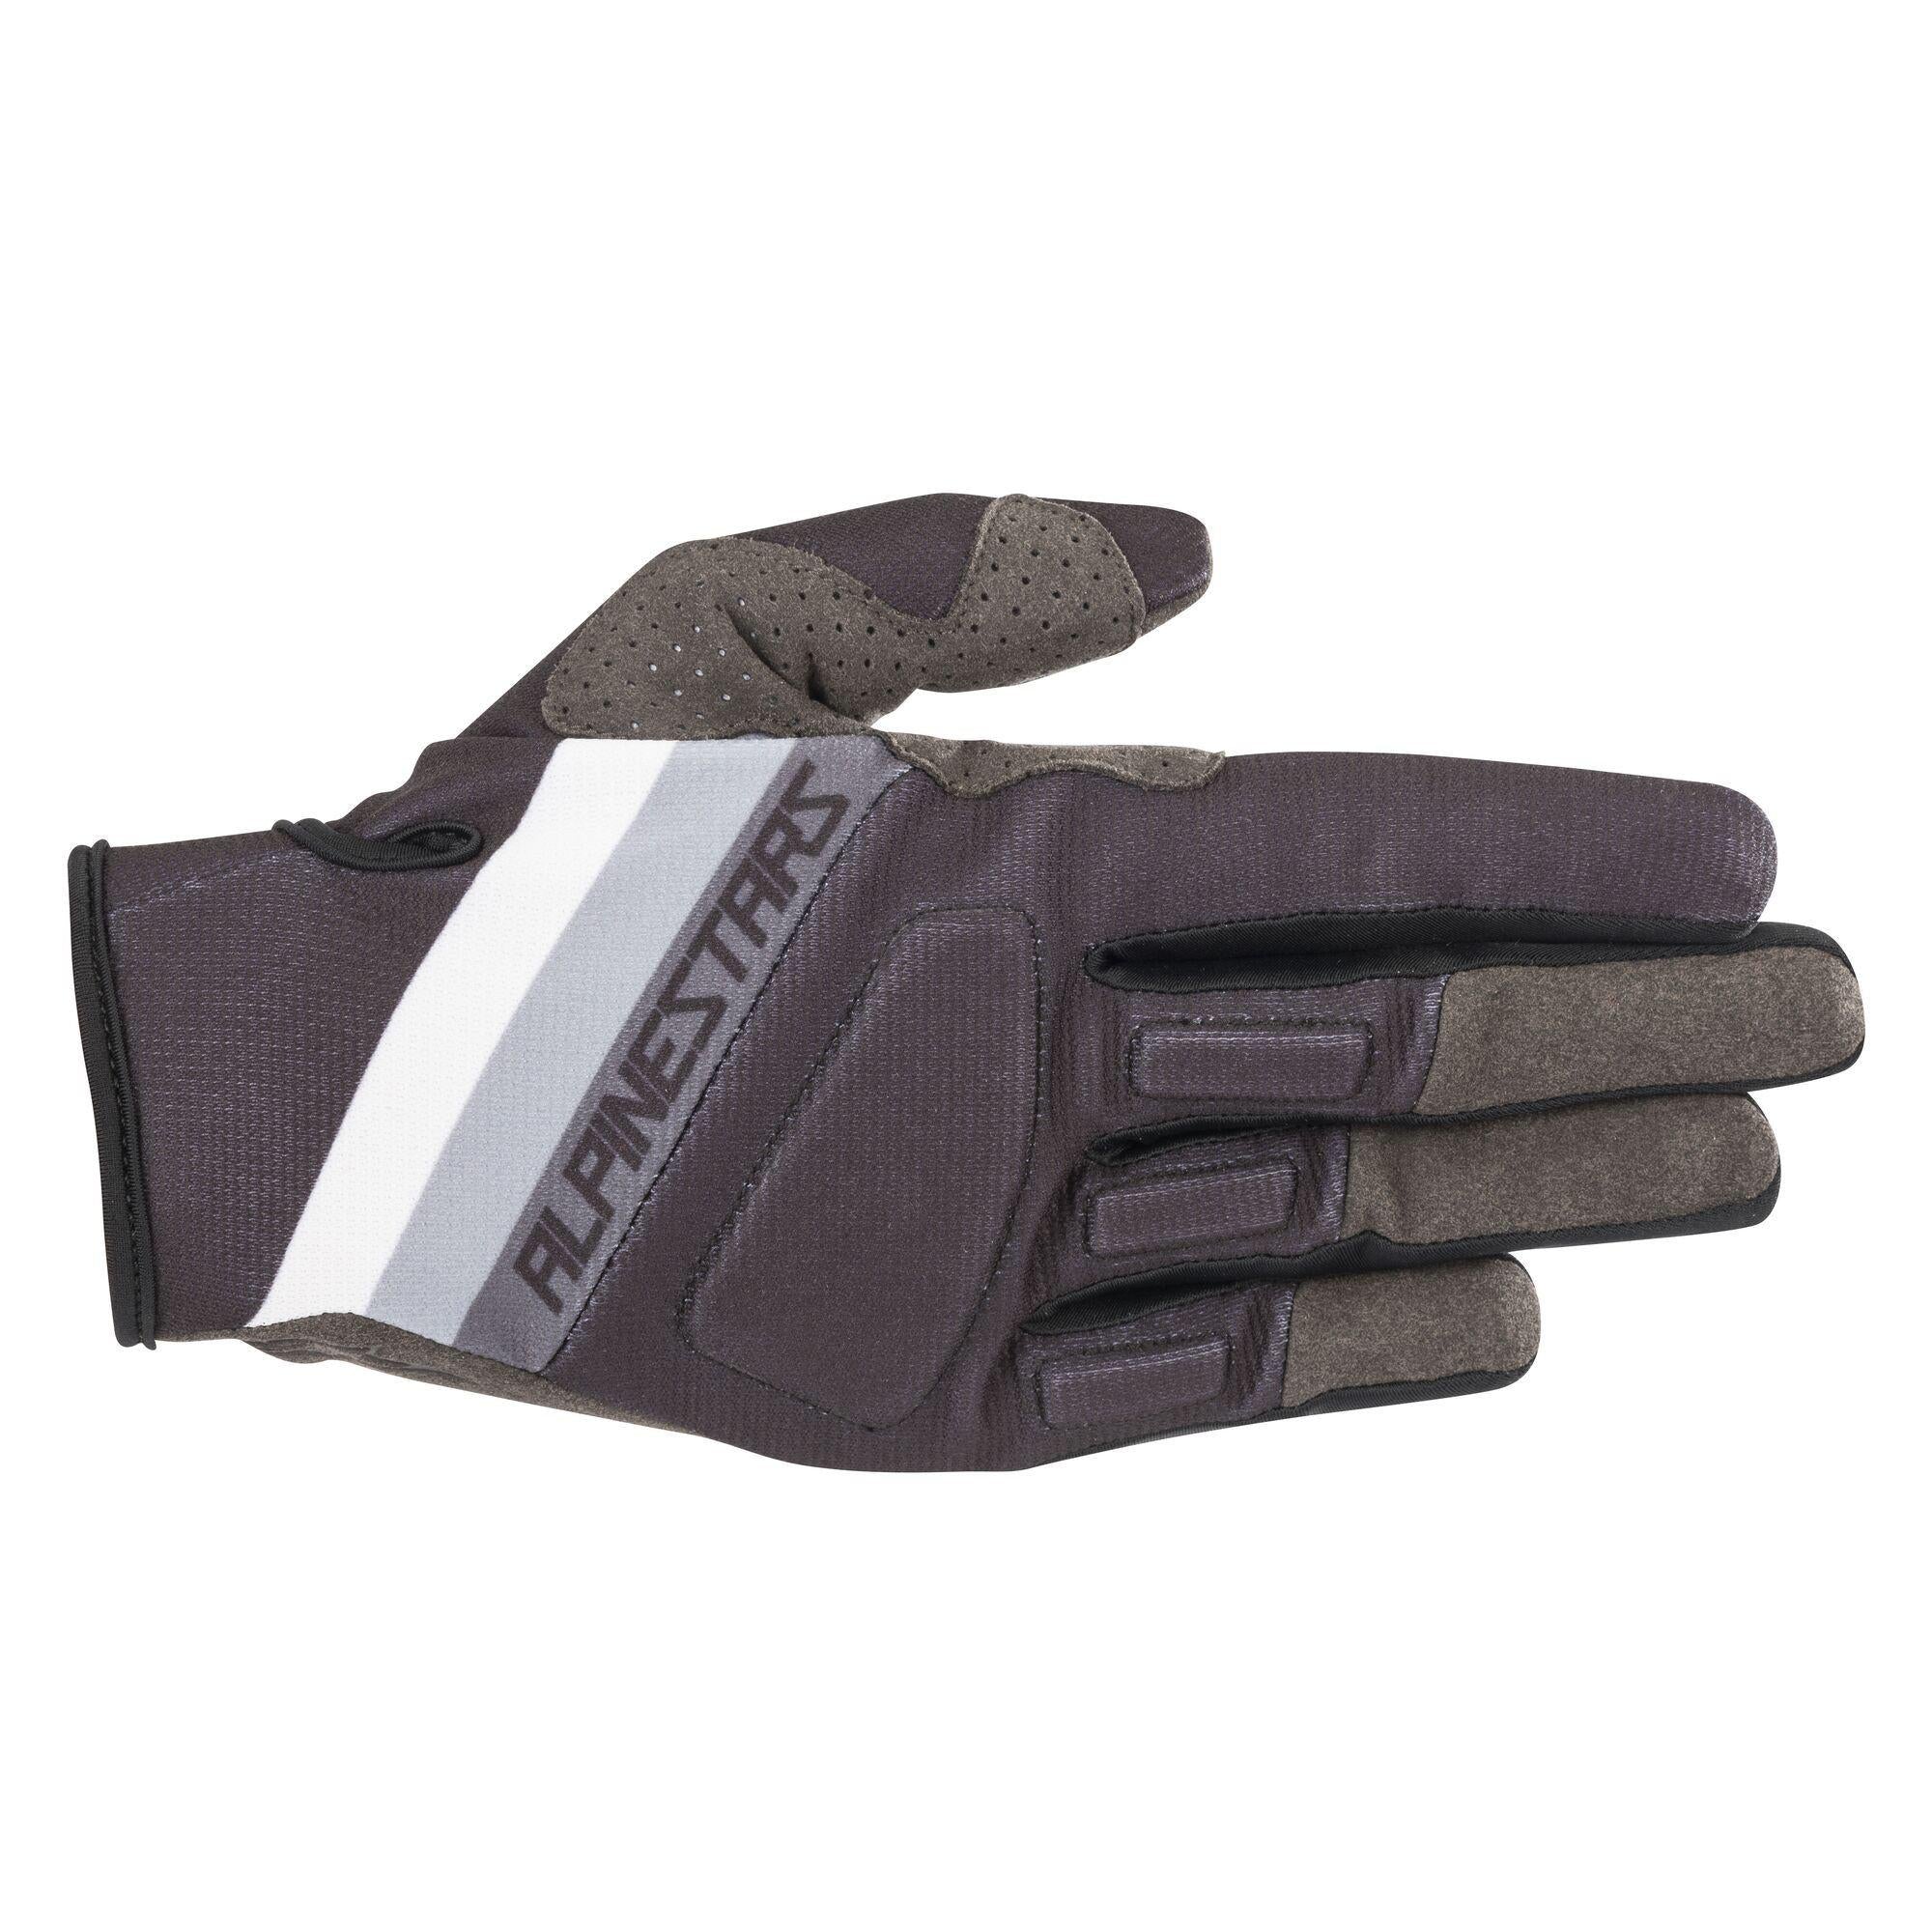 Aspen Pro Gloves